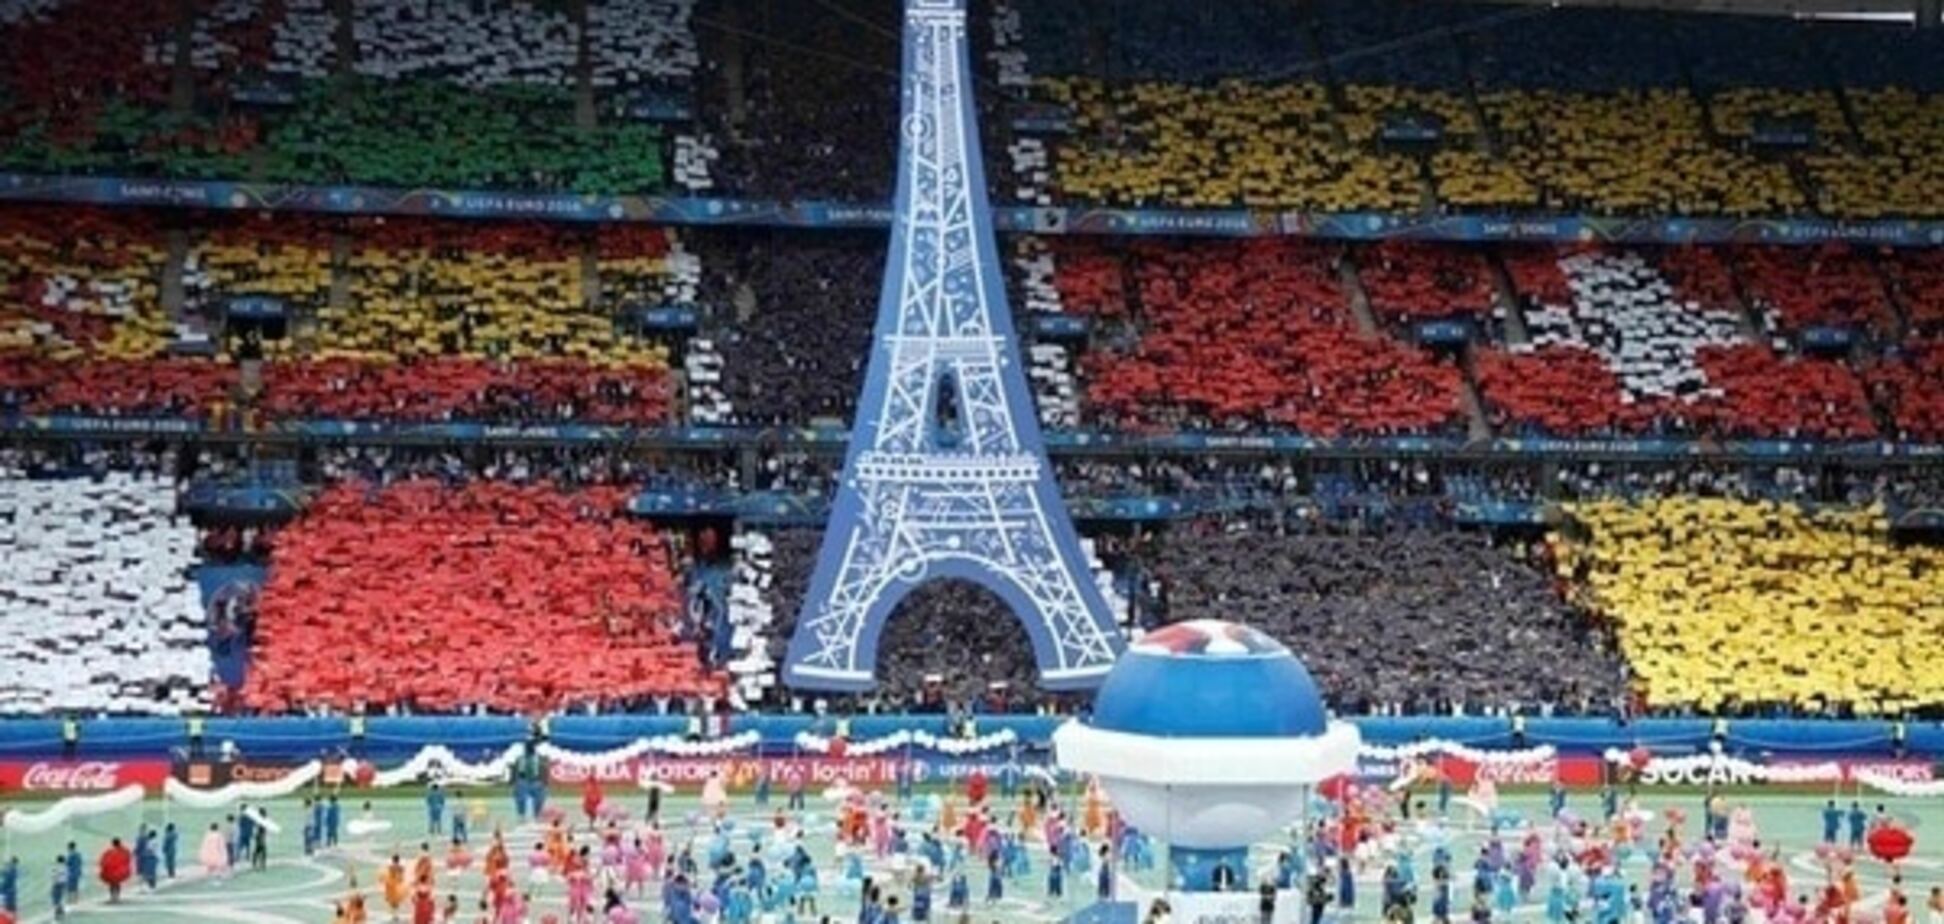 50 на одного: Франция усилила меры безопасности на финале Евро-2016